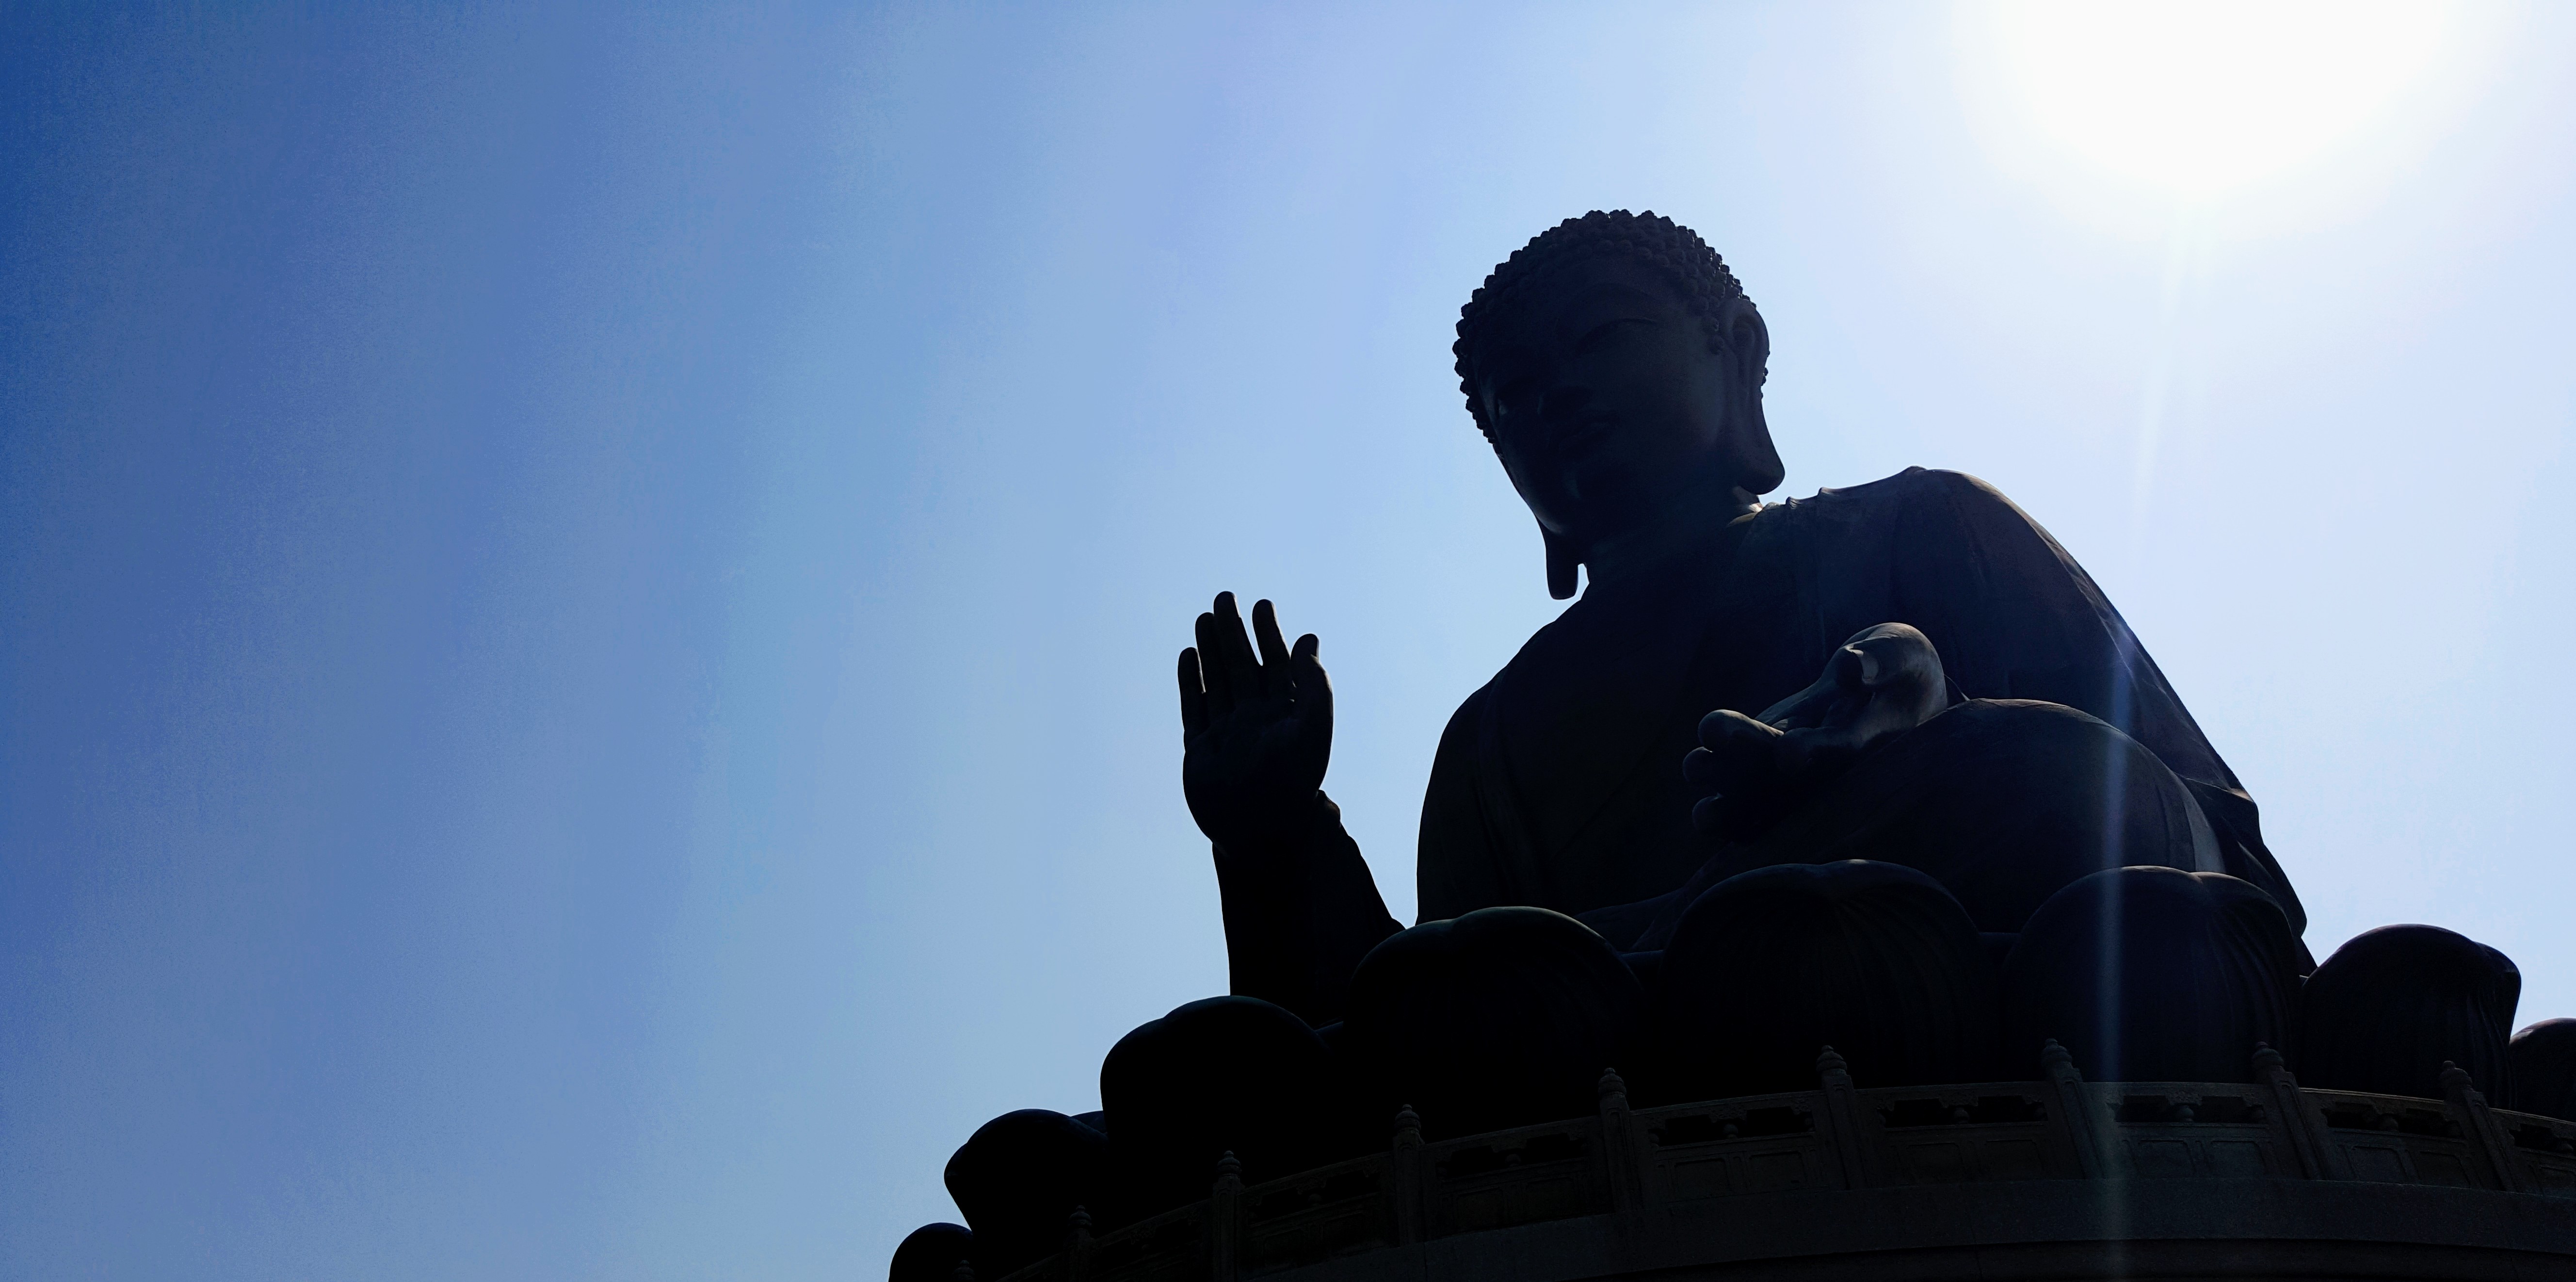 Big Buddha Hong Kong